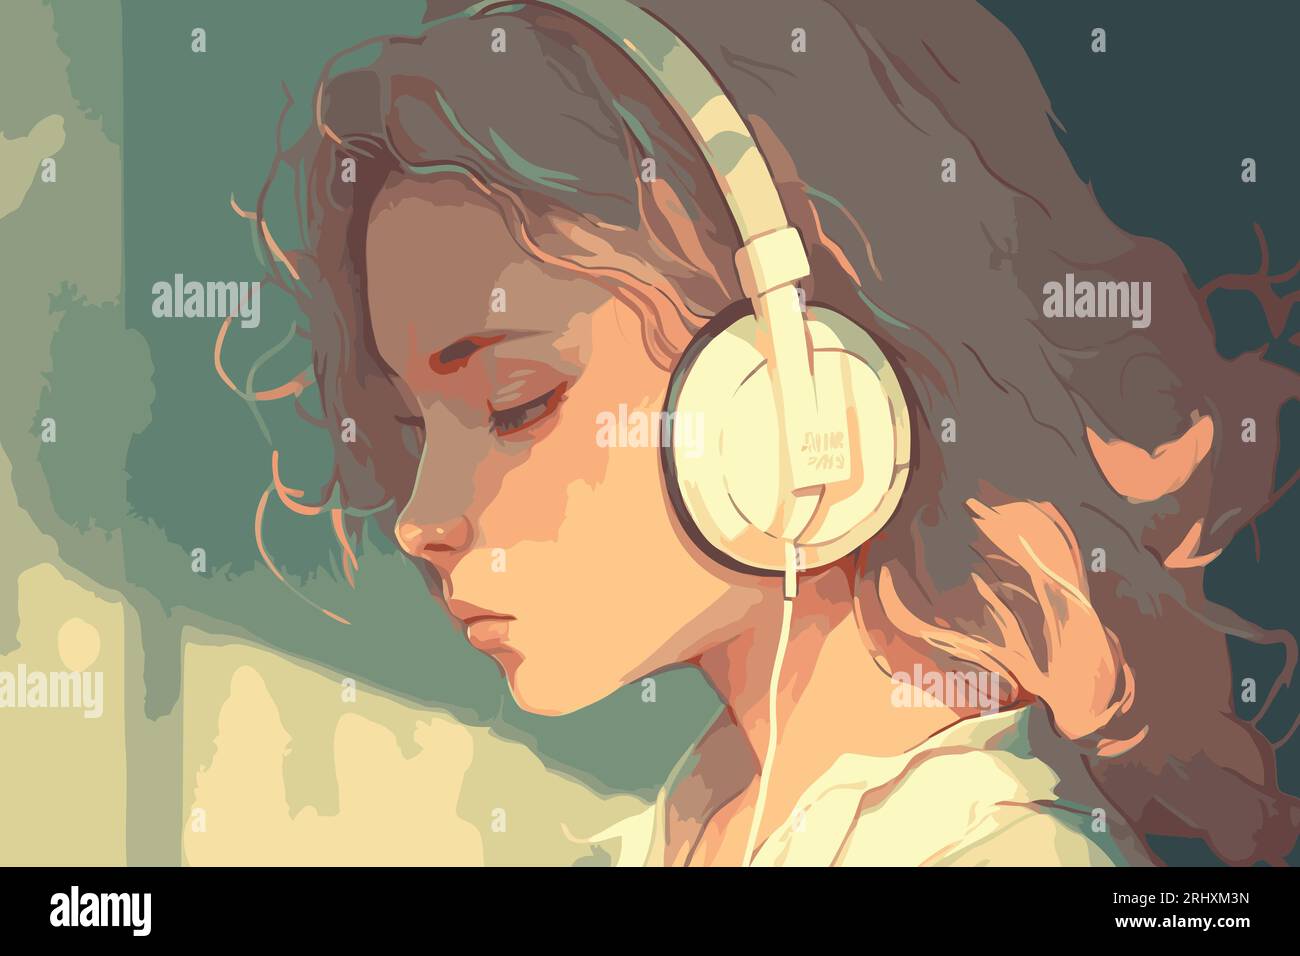 Editing Girl Listening to music - Free online pixel art drawing tool -  Pixilart